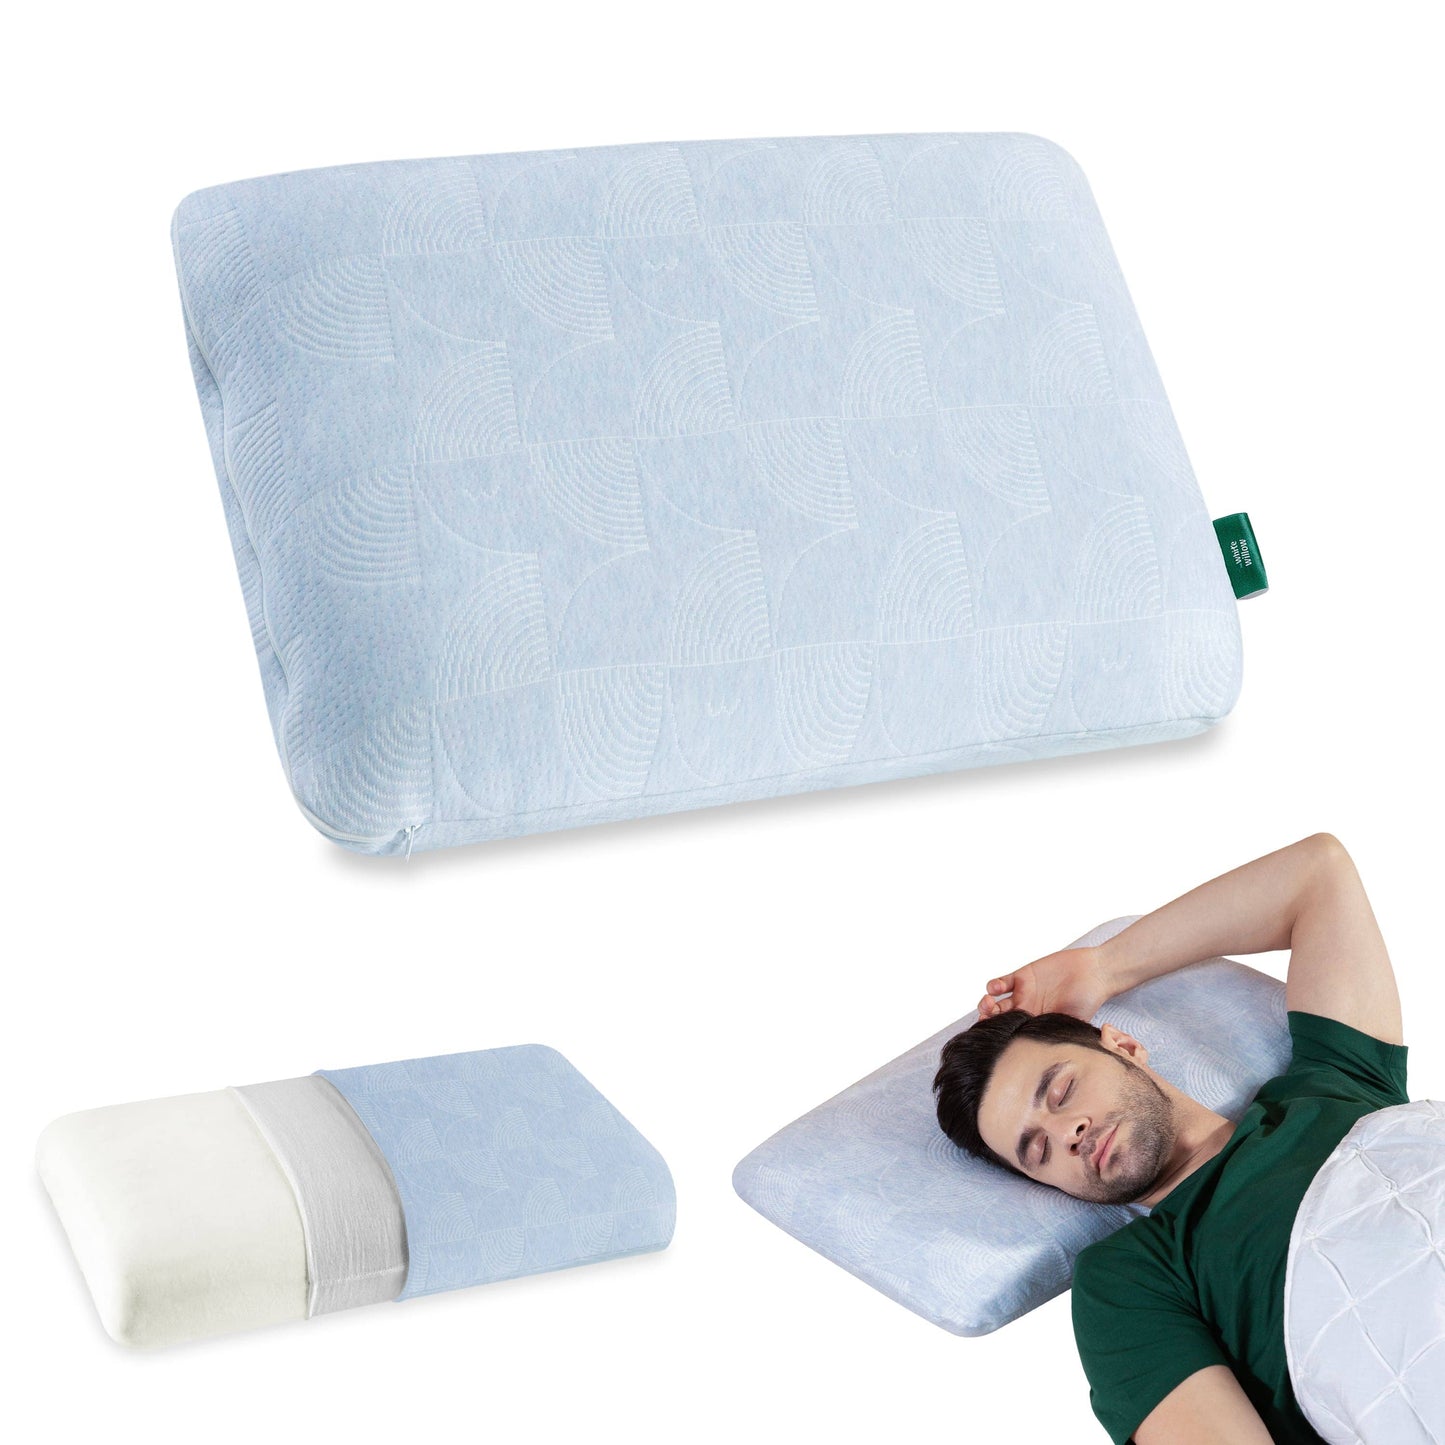 Cypress - Memory Foam Pillow - Regular - Medium Firm Regular Pillow The White Willow Medium 4"H Standard 22x14 Pack of 1 Green